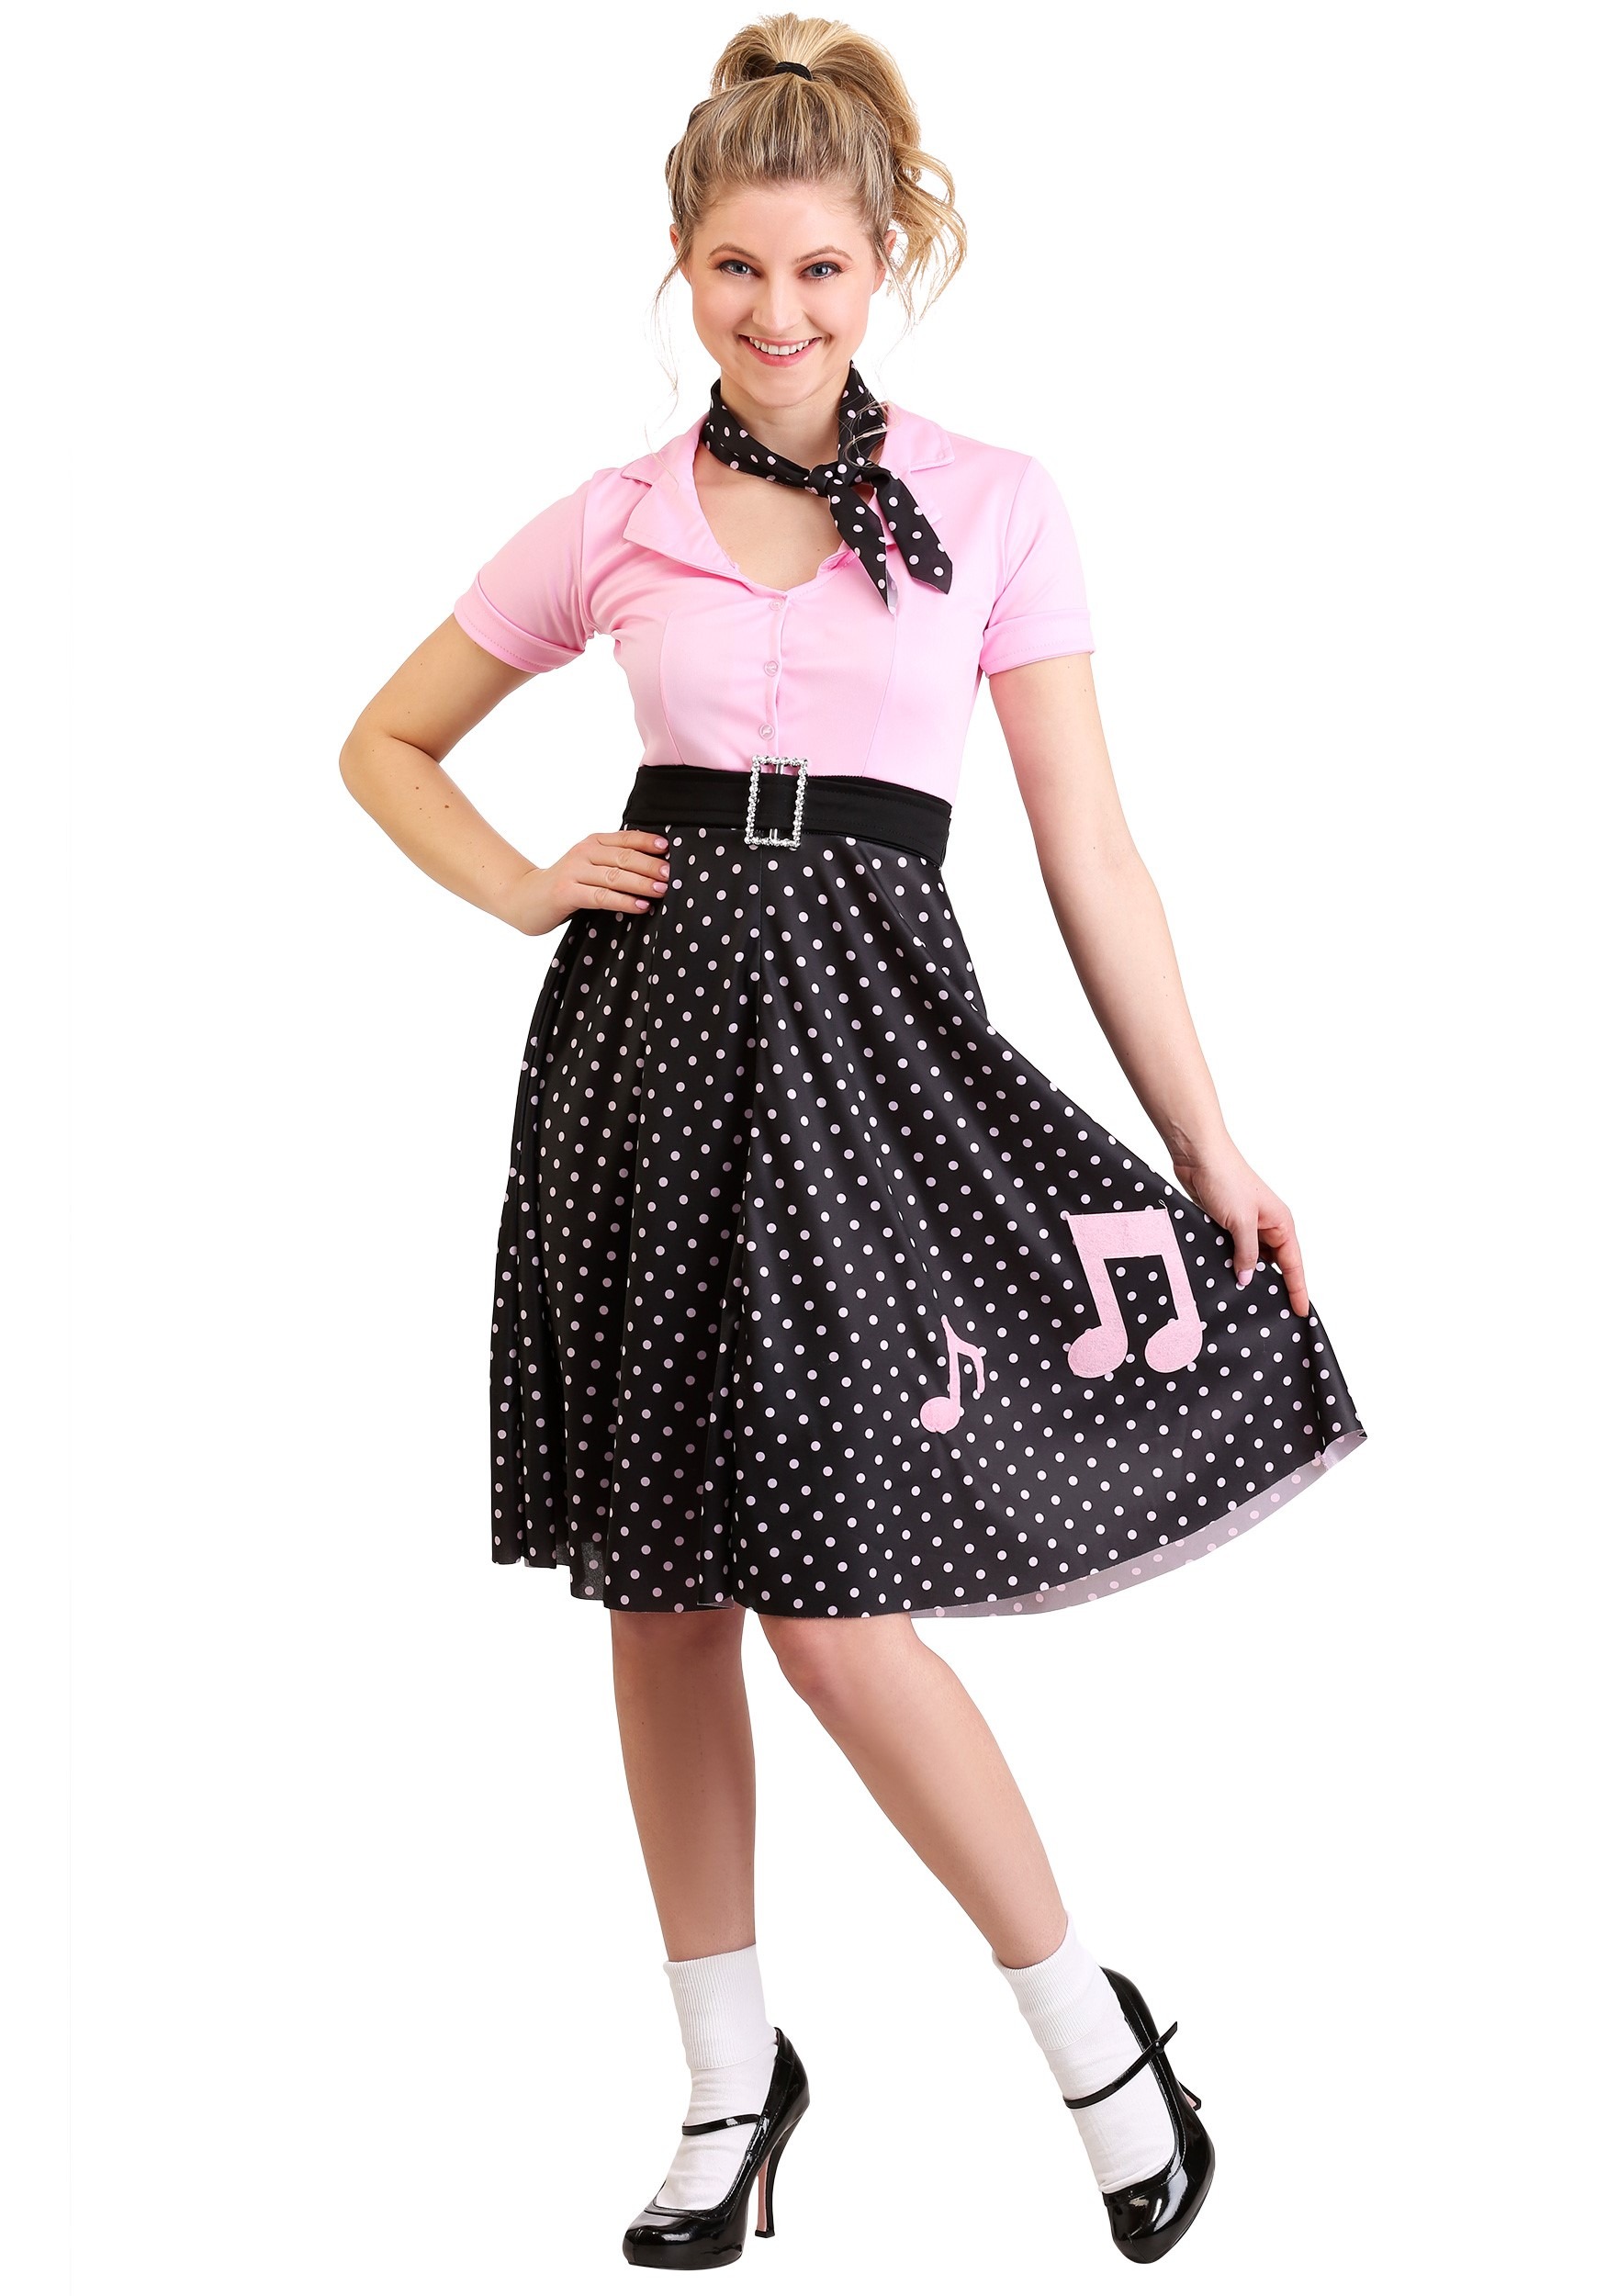 Poodle Skirts | Poodle Skirt Costumes, Patterns, History Sock Hop Cutie Costume $29.99 AT vintagedancer.com